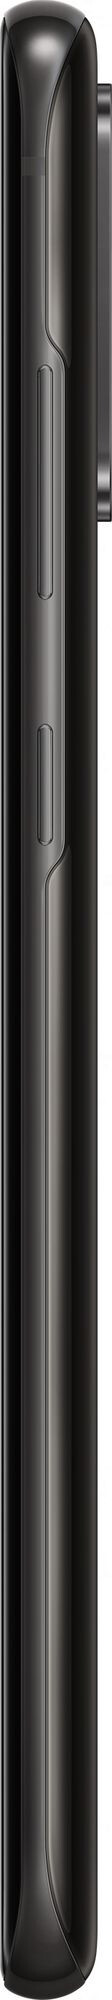 Смартфон Samsung Galaxy S20 Plus (SM-G986B) 5G 12/128GB Black (Черный)